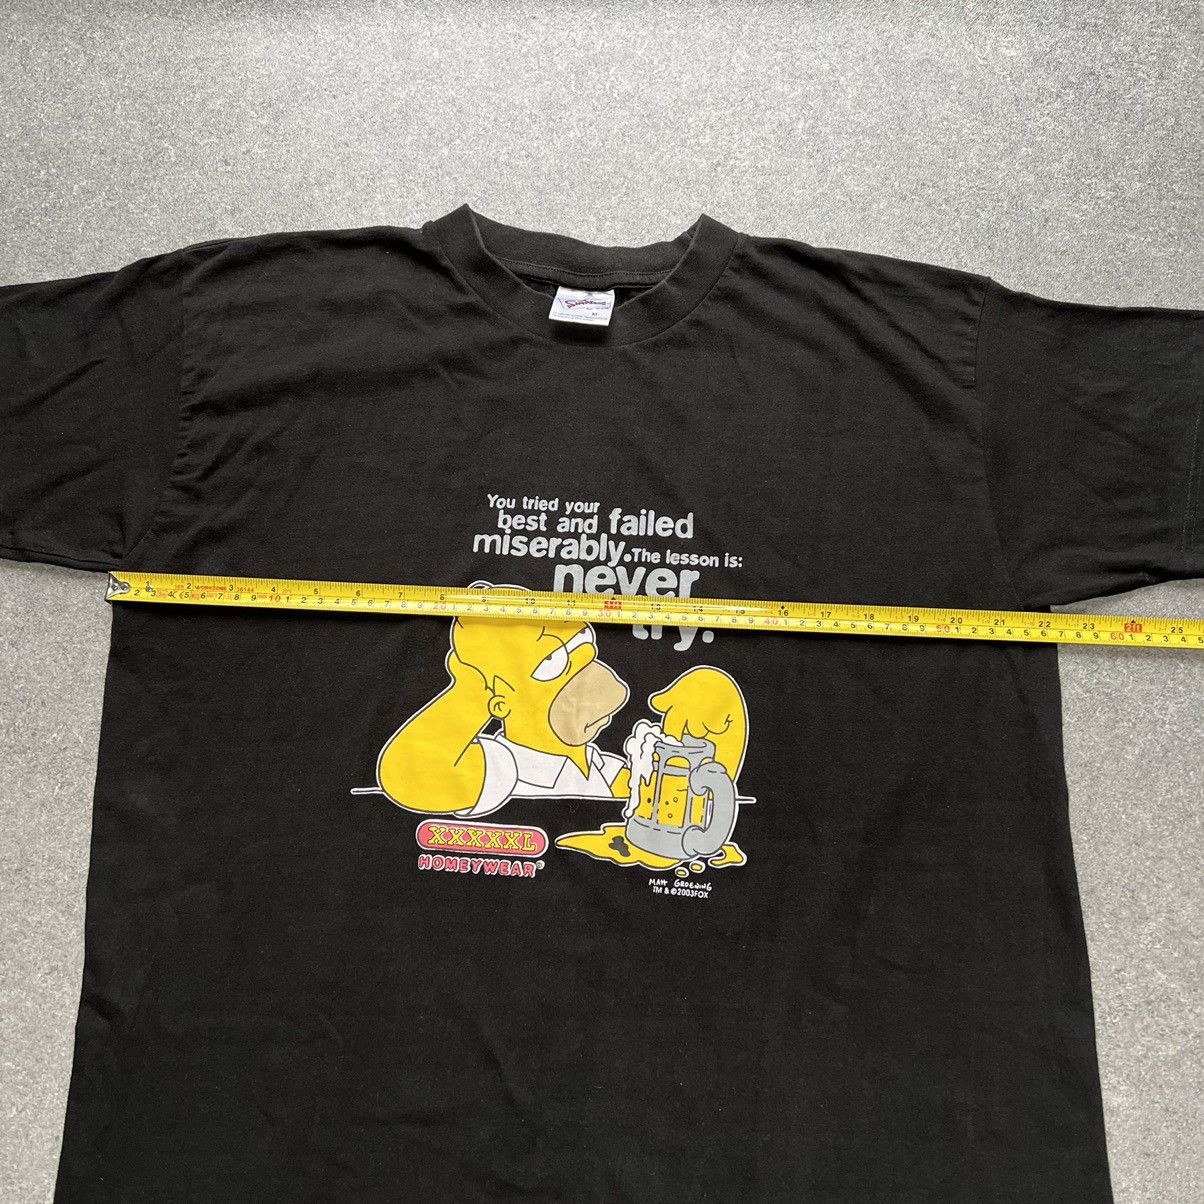 Vintage Vintage Simpsons Graphic T-Shirt 2004 Y2K’s - Men’s Medium Size US M / EU 48-50 / 2 - 9 Thumbnail